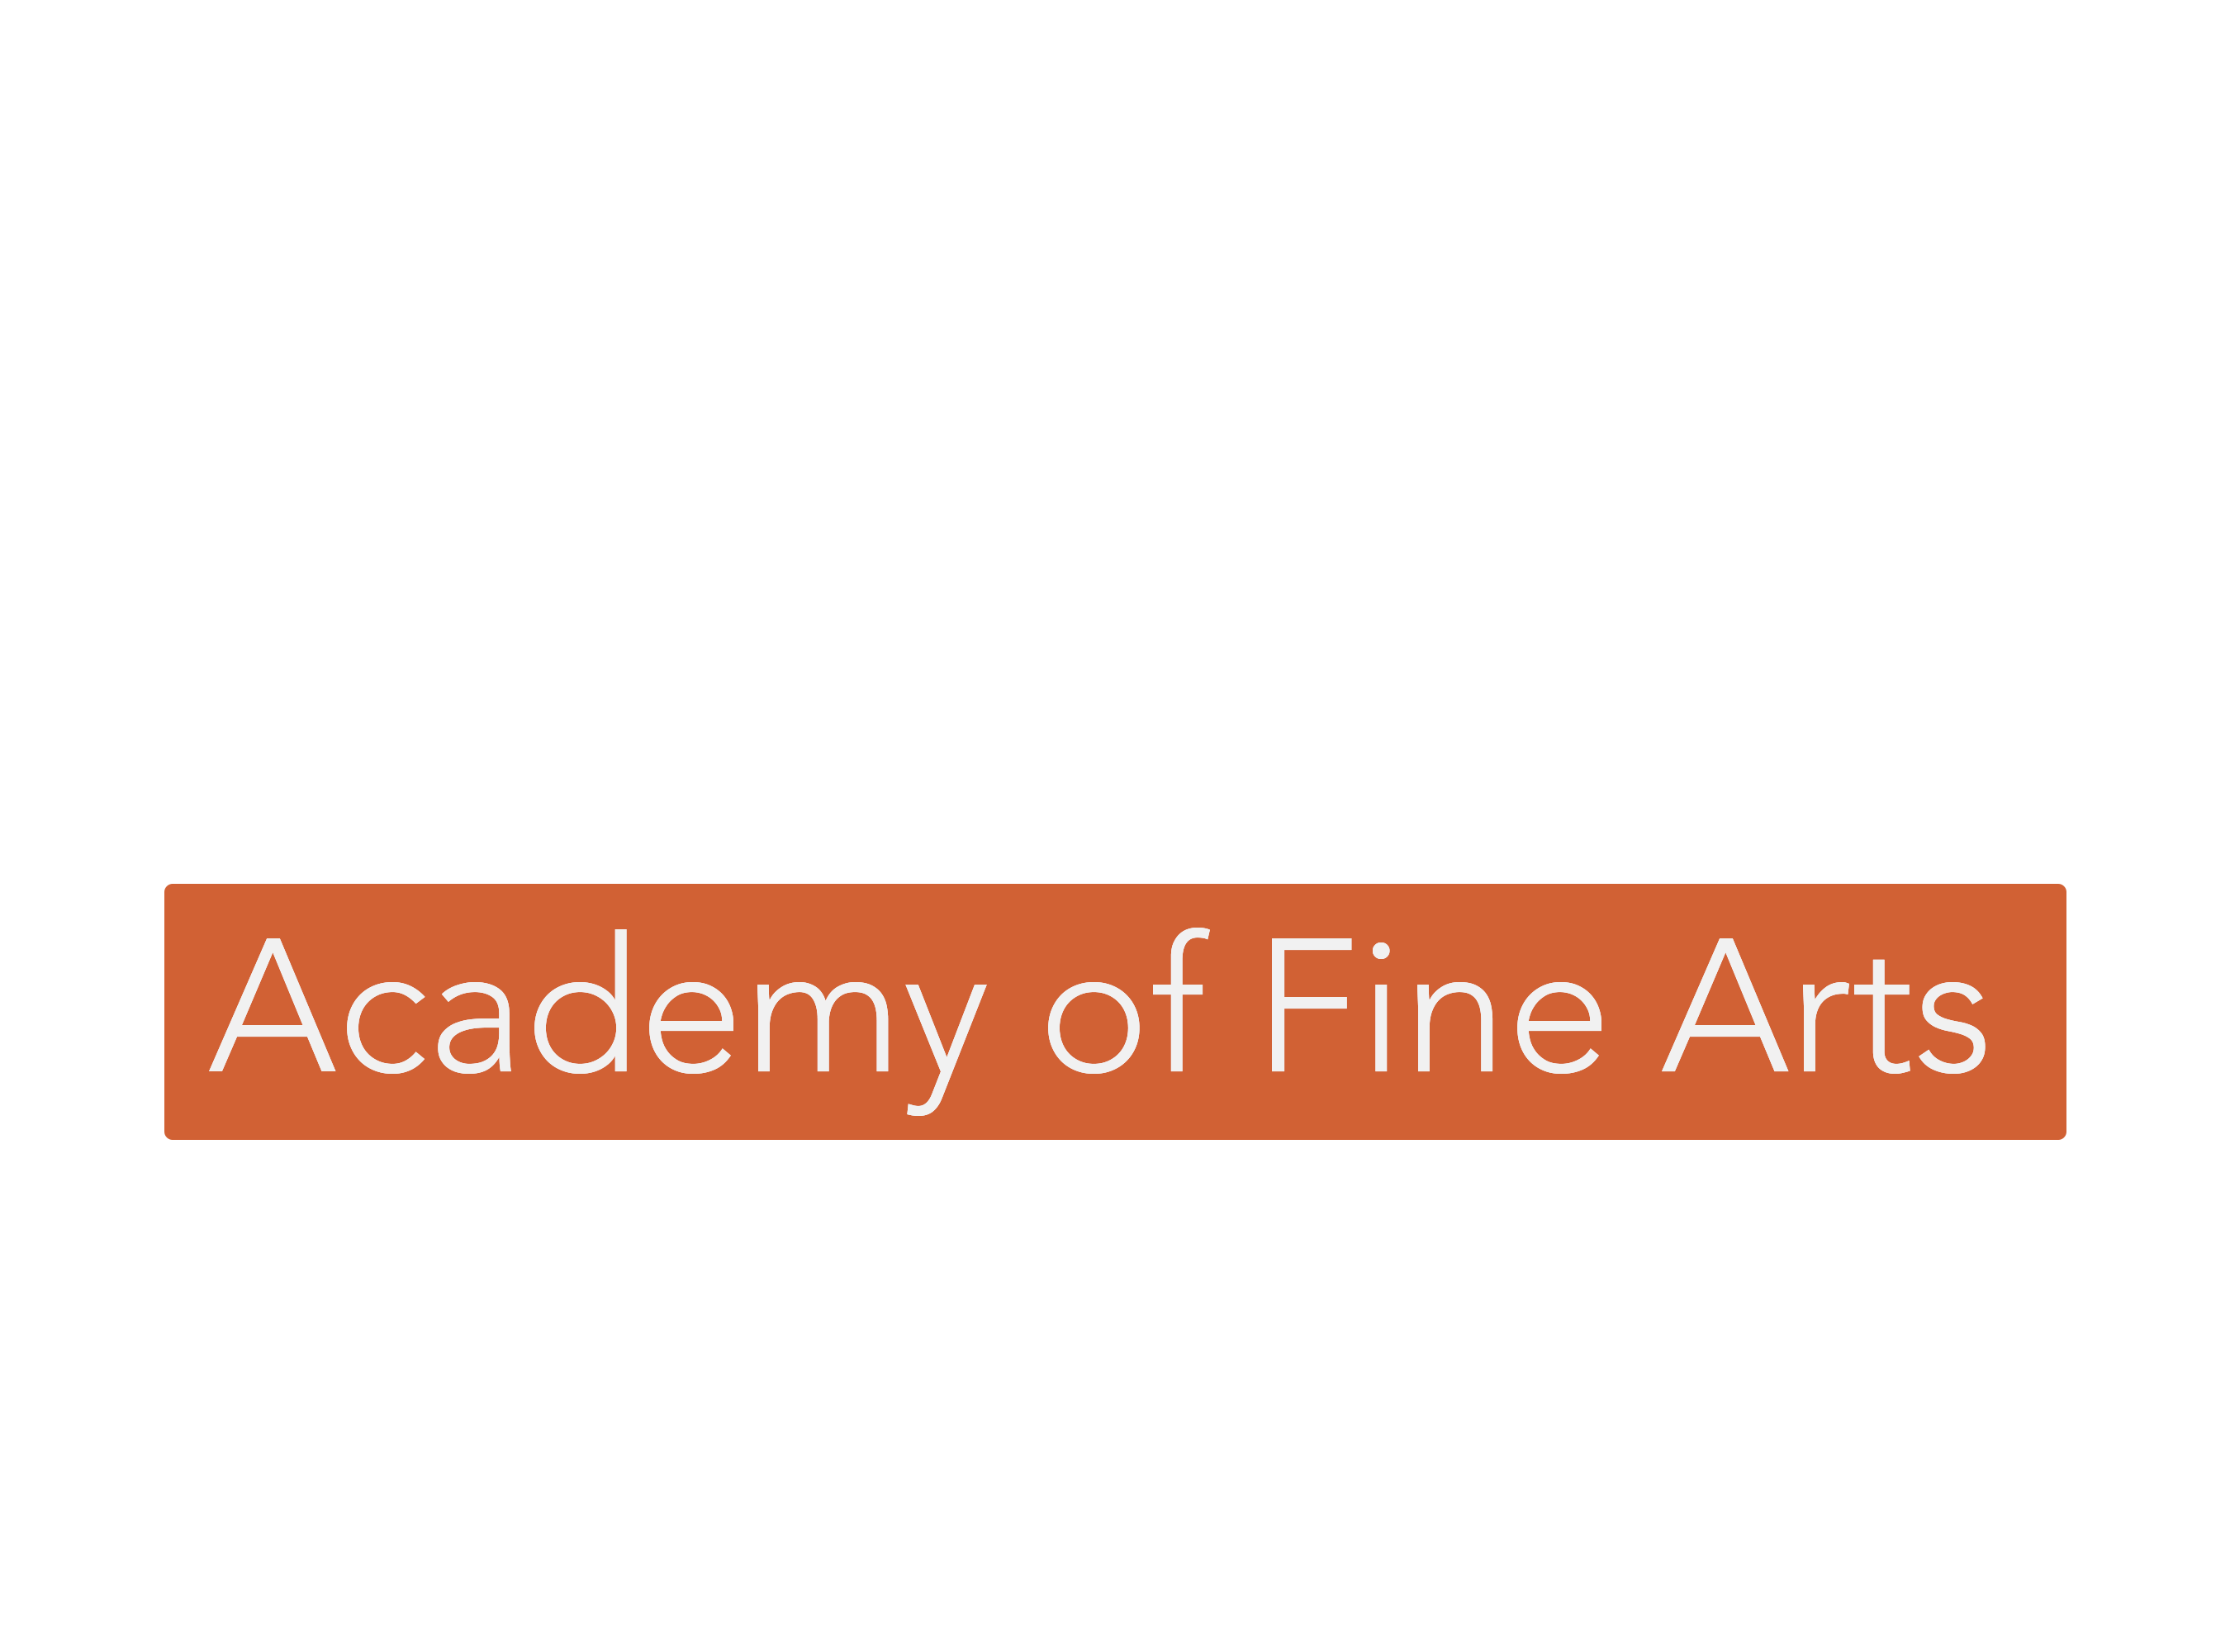 Bridges Academy of Fine Arts in Houston